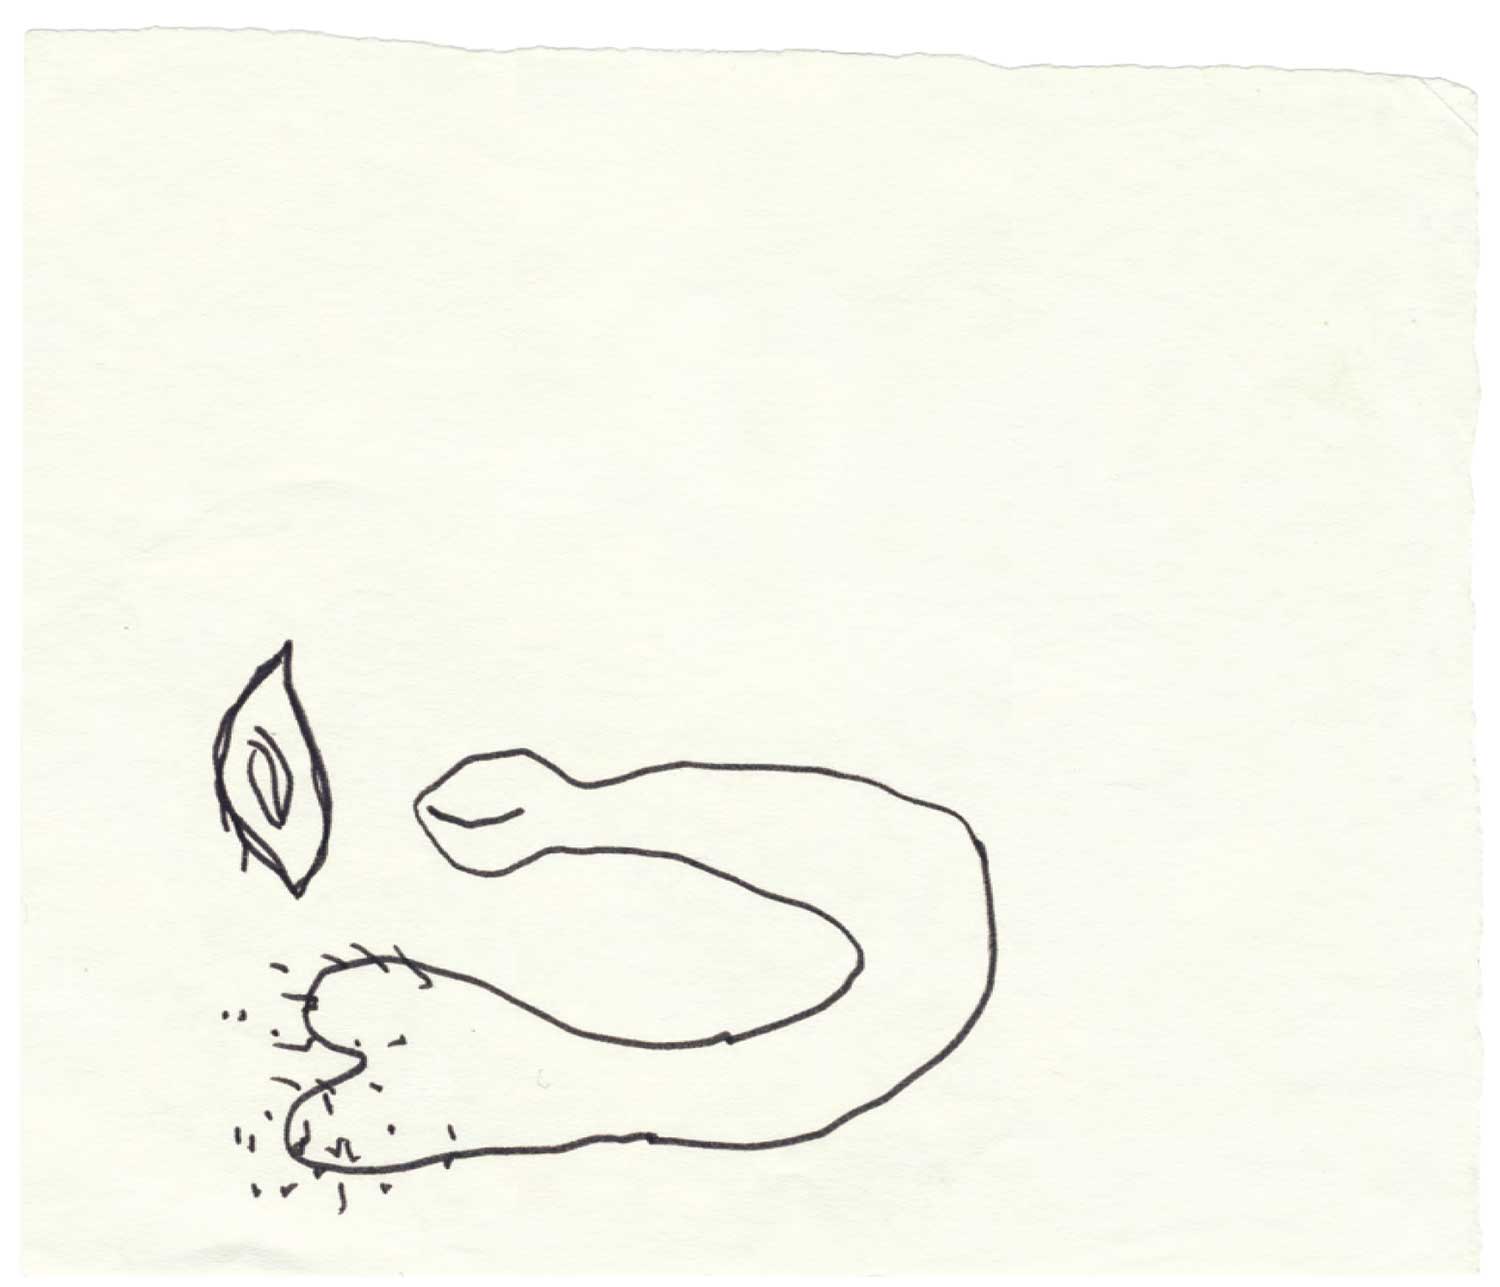 Annette Messager - Mes dessins secrets, 1972/2011